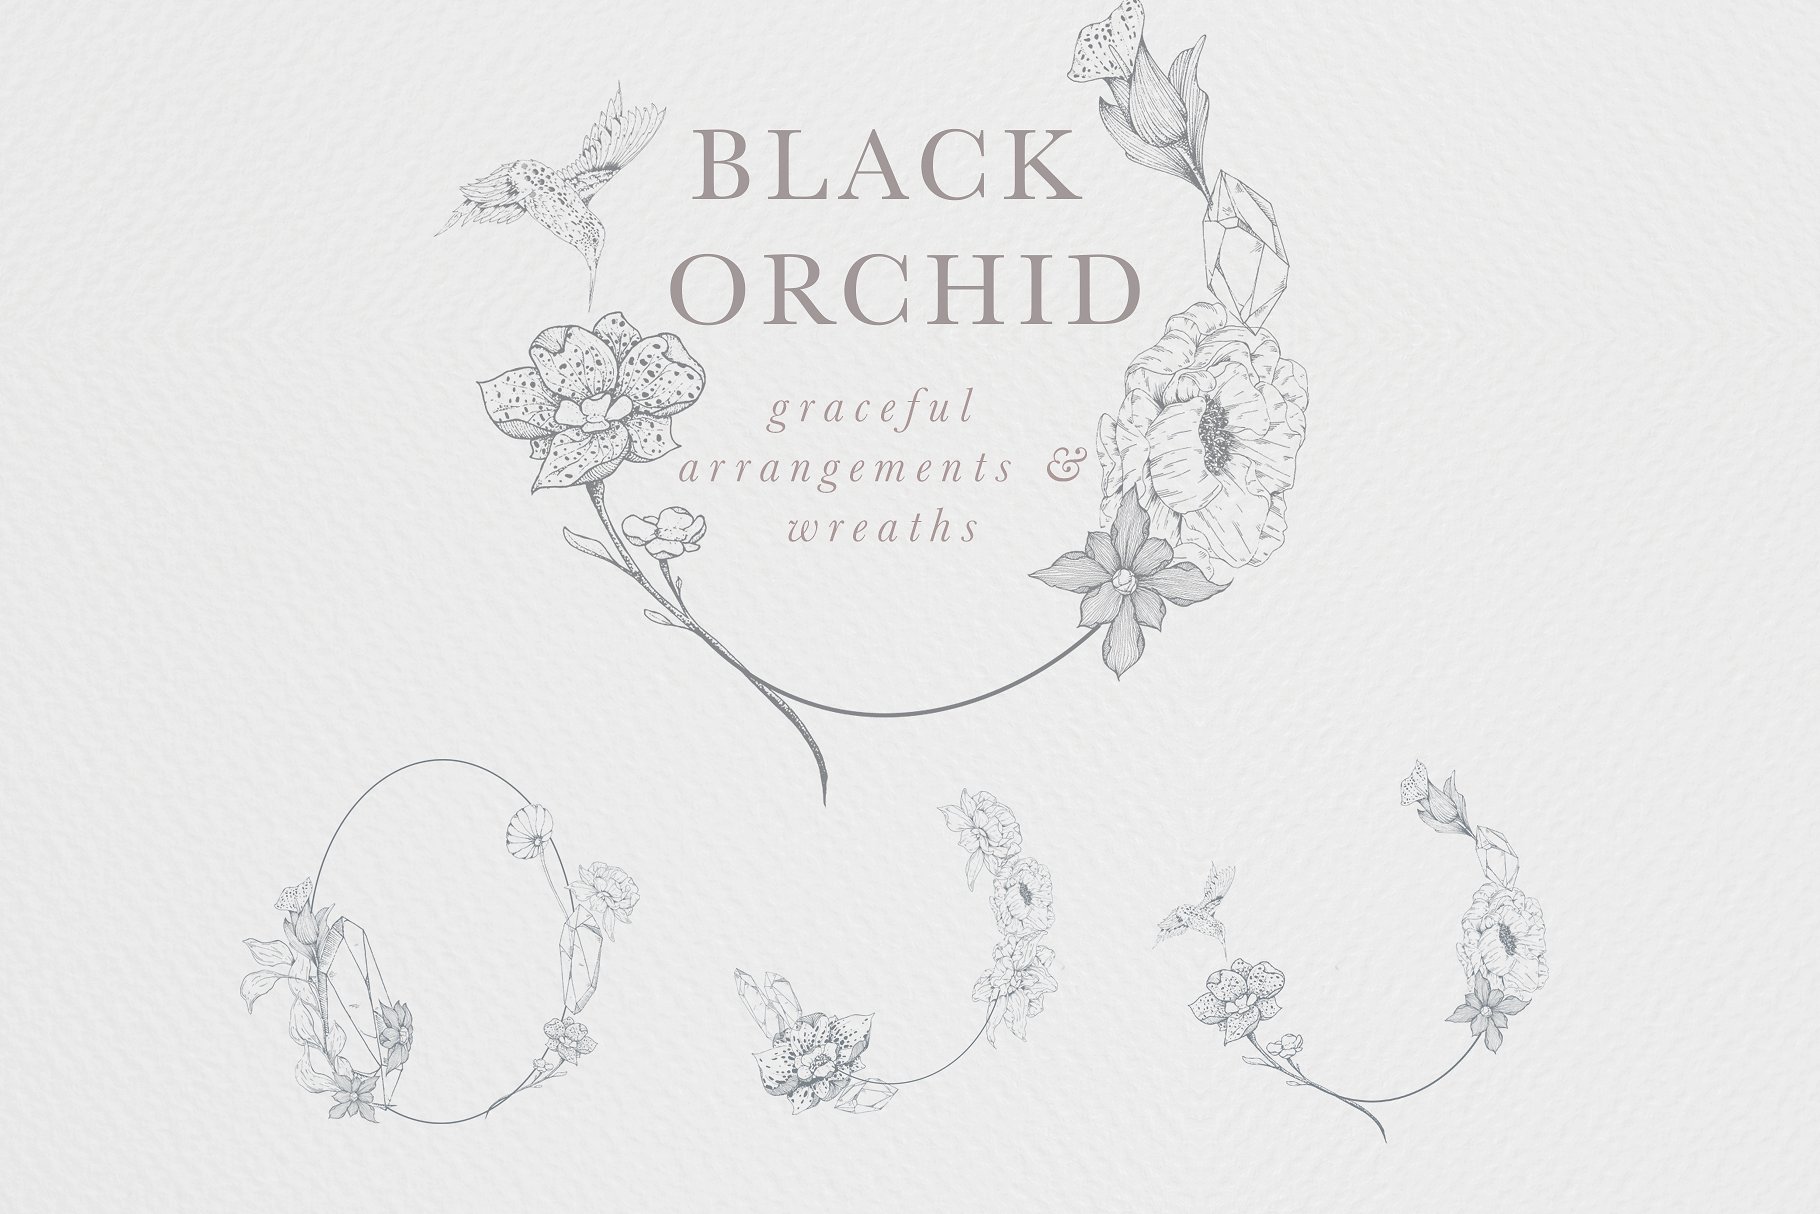 虚实结合黑色背景手绘矢量花卉图形素材 Black Orchid Illustration Set插图(5)